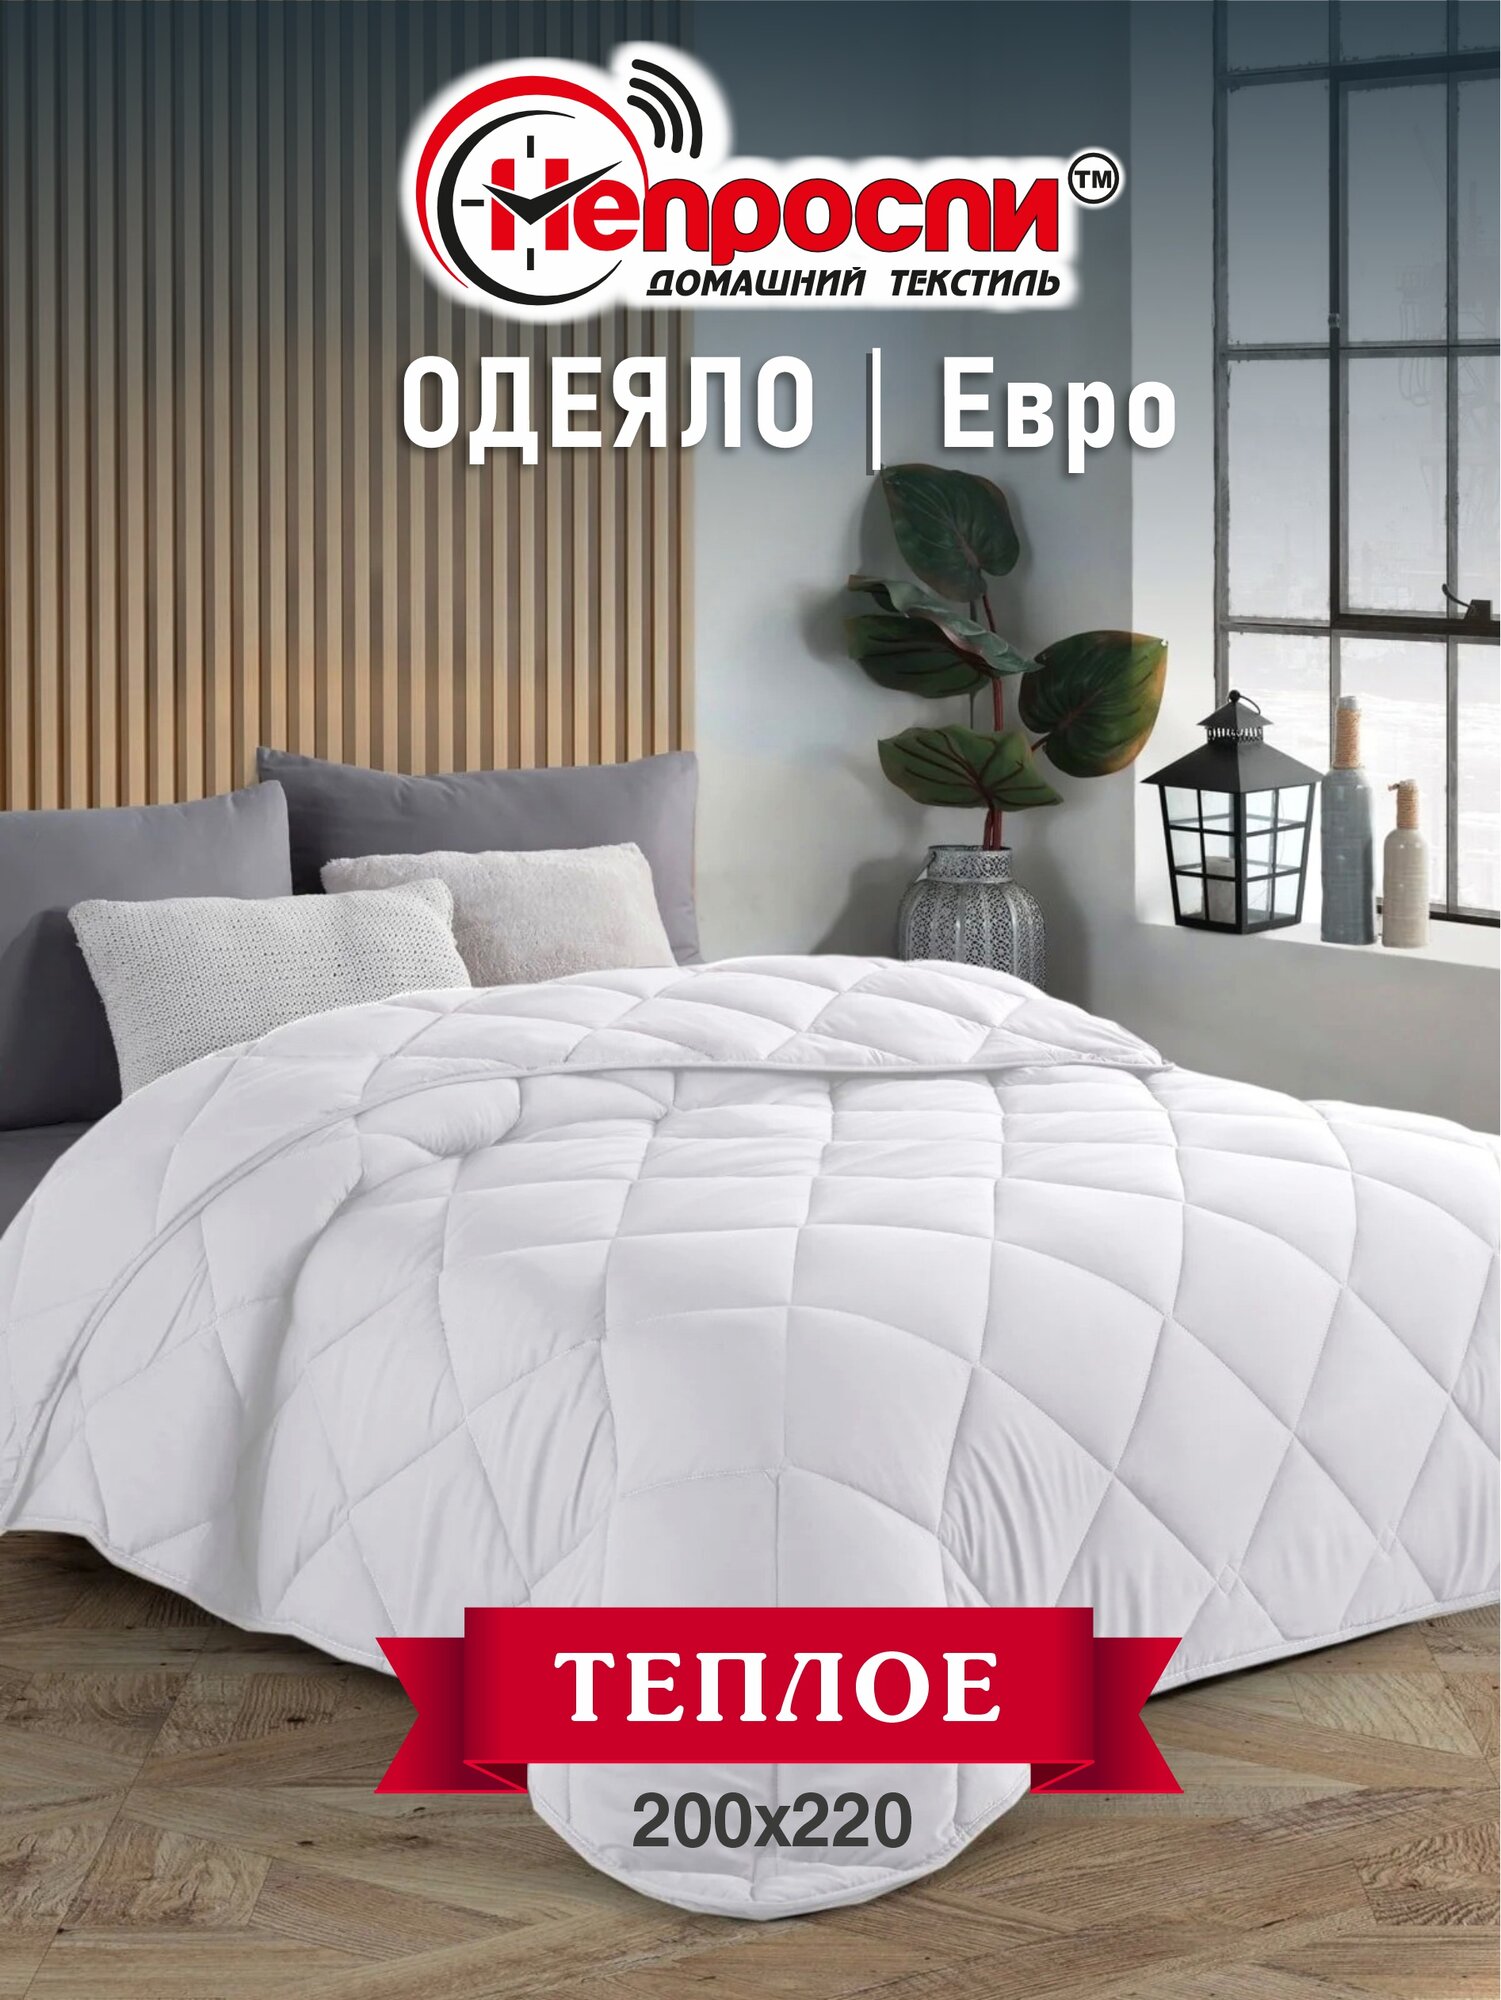 Одеяло Непроспи "Бамбук" Евро 200х220 см / Всесезонное, теплое, стеганое одеяло из бамбукового волокна